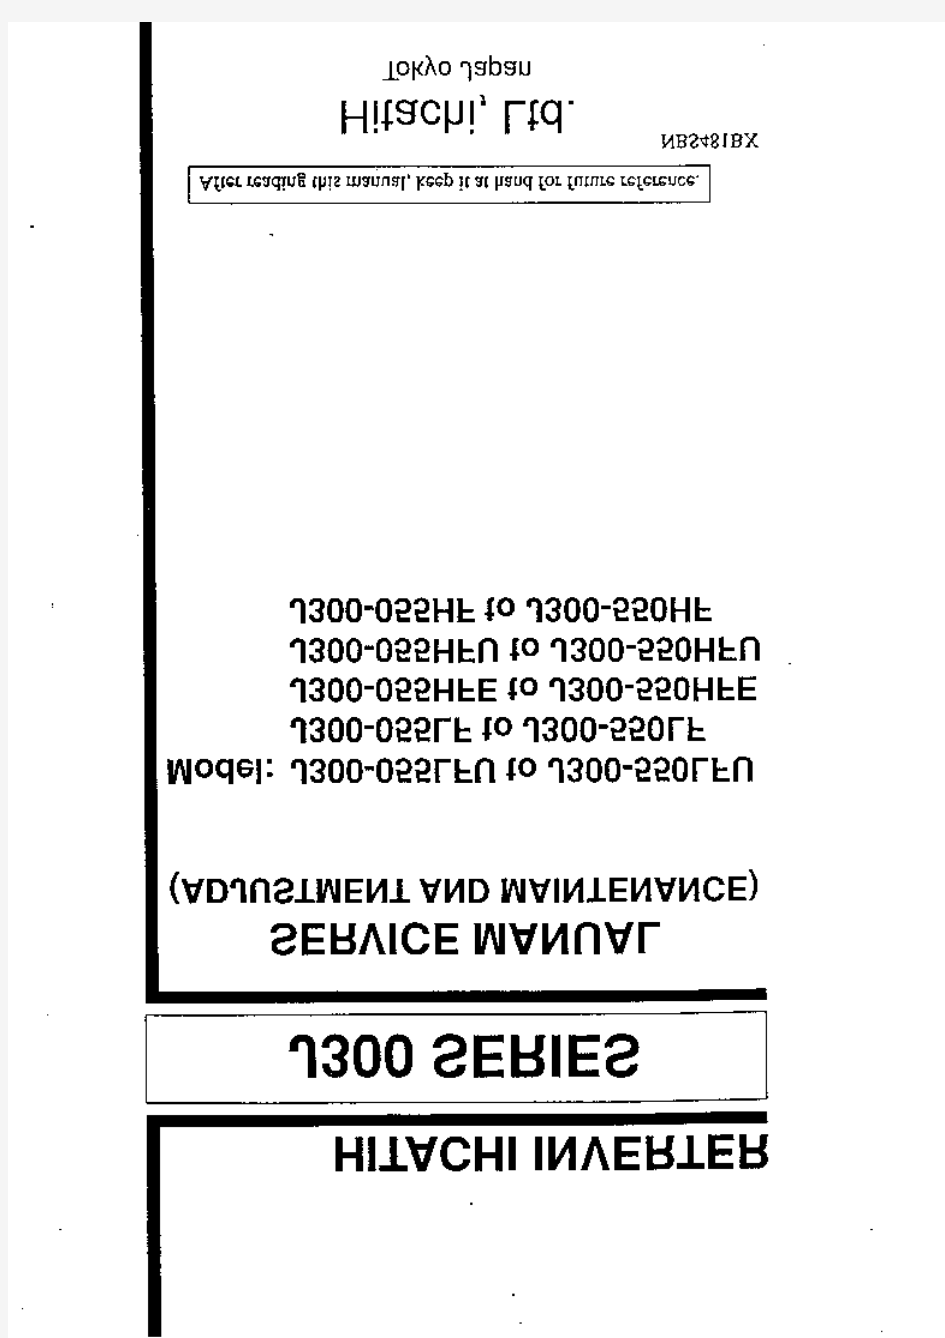 日立J300系列变频器维修手册